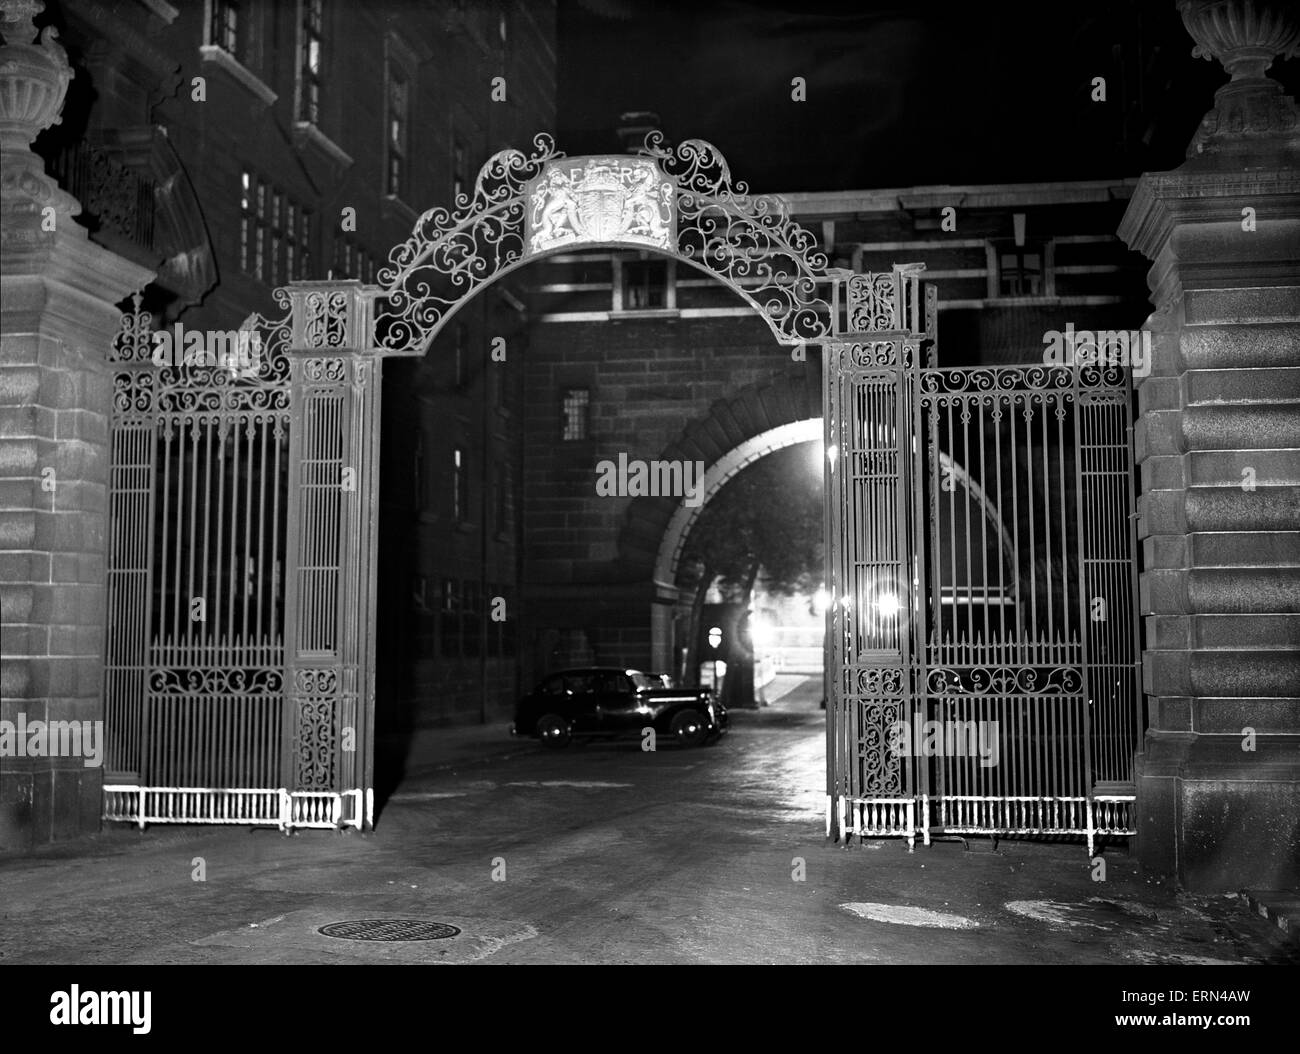 Scotland Yard vieux porte principale Scène de nuit, le 16 septembre 1949. Banque D'Images